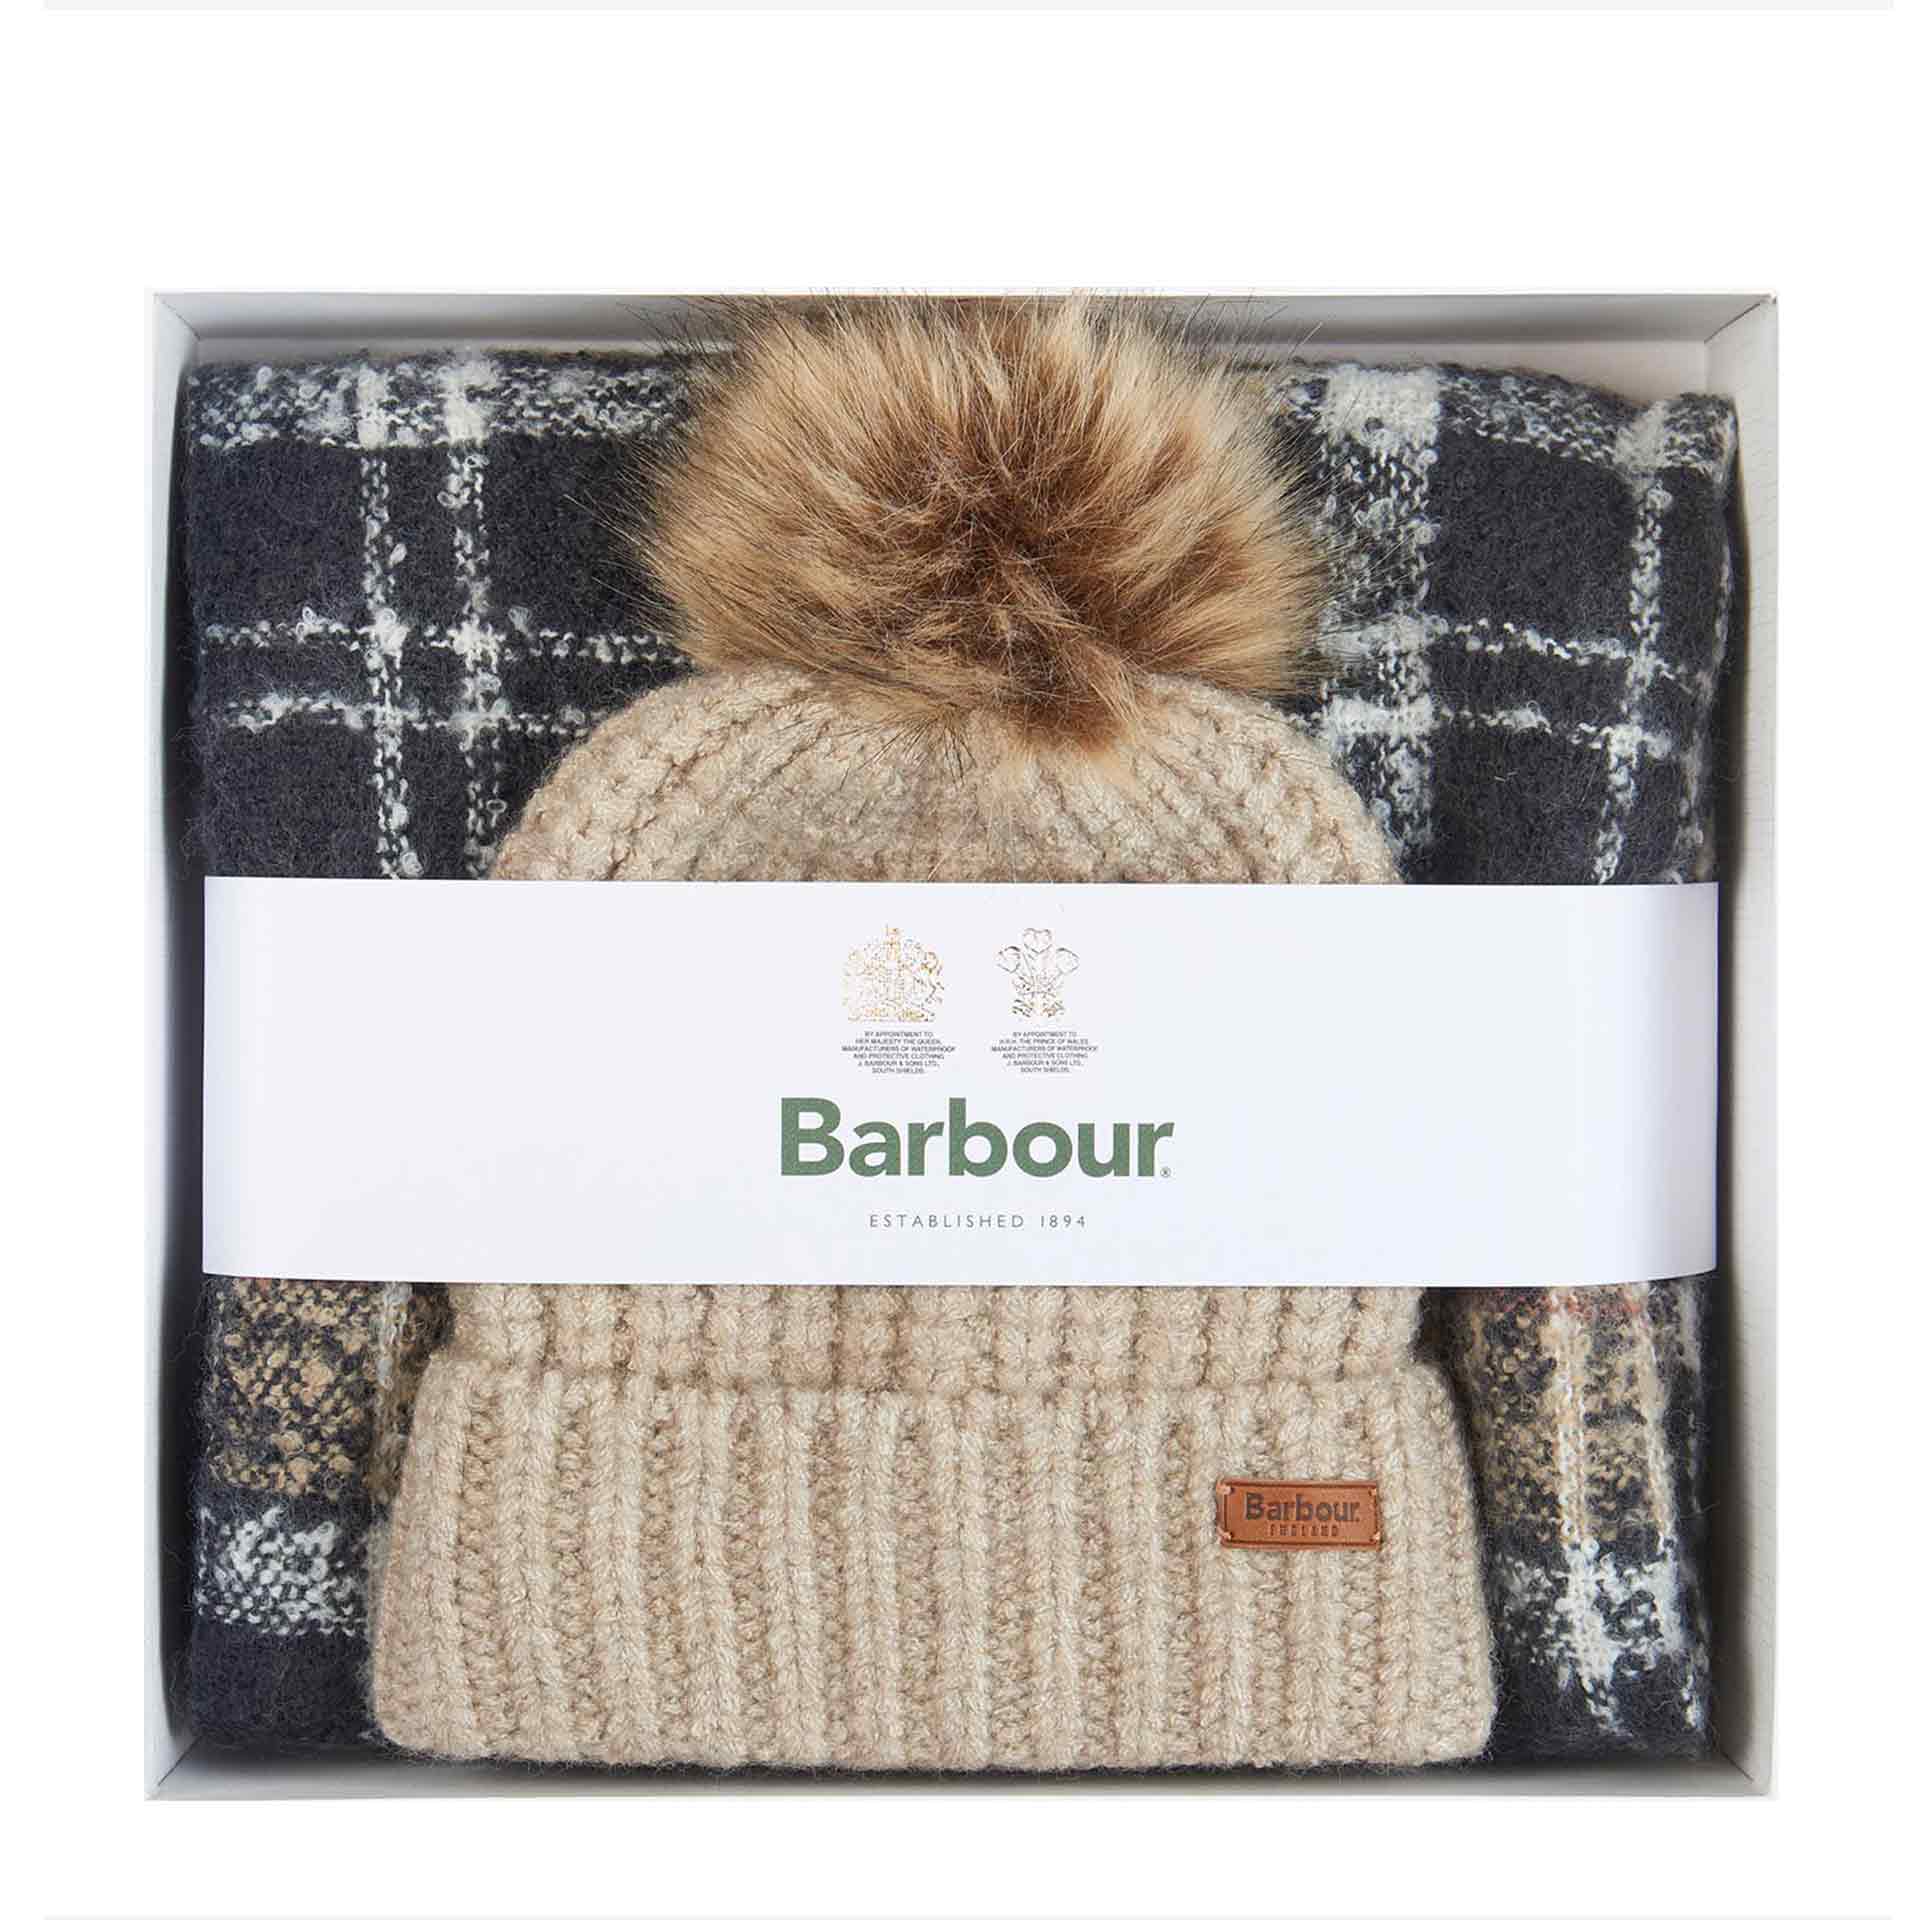 Barbour Saltburn Mütze mit Tartan Schal im Geschenkset rosewood